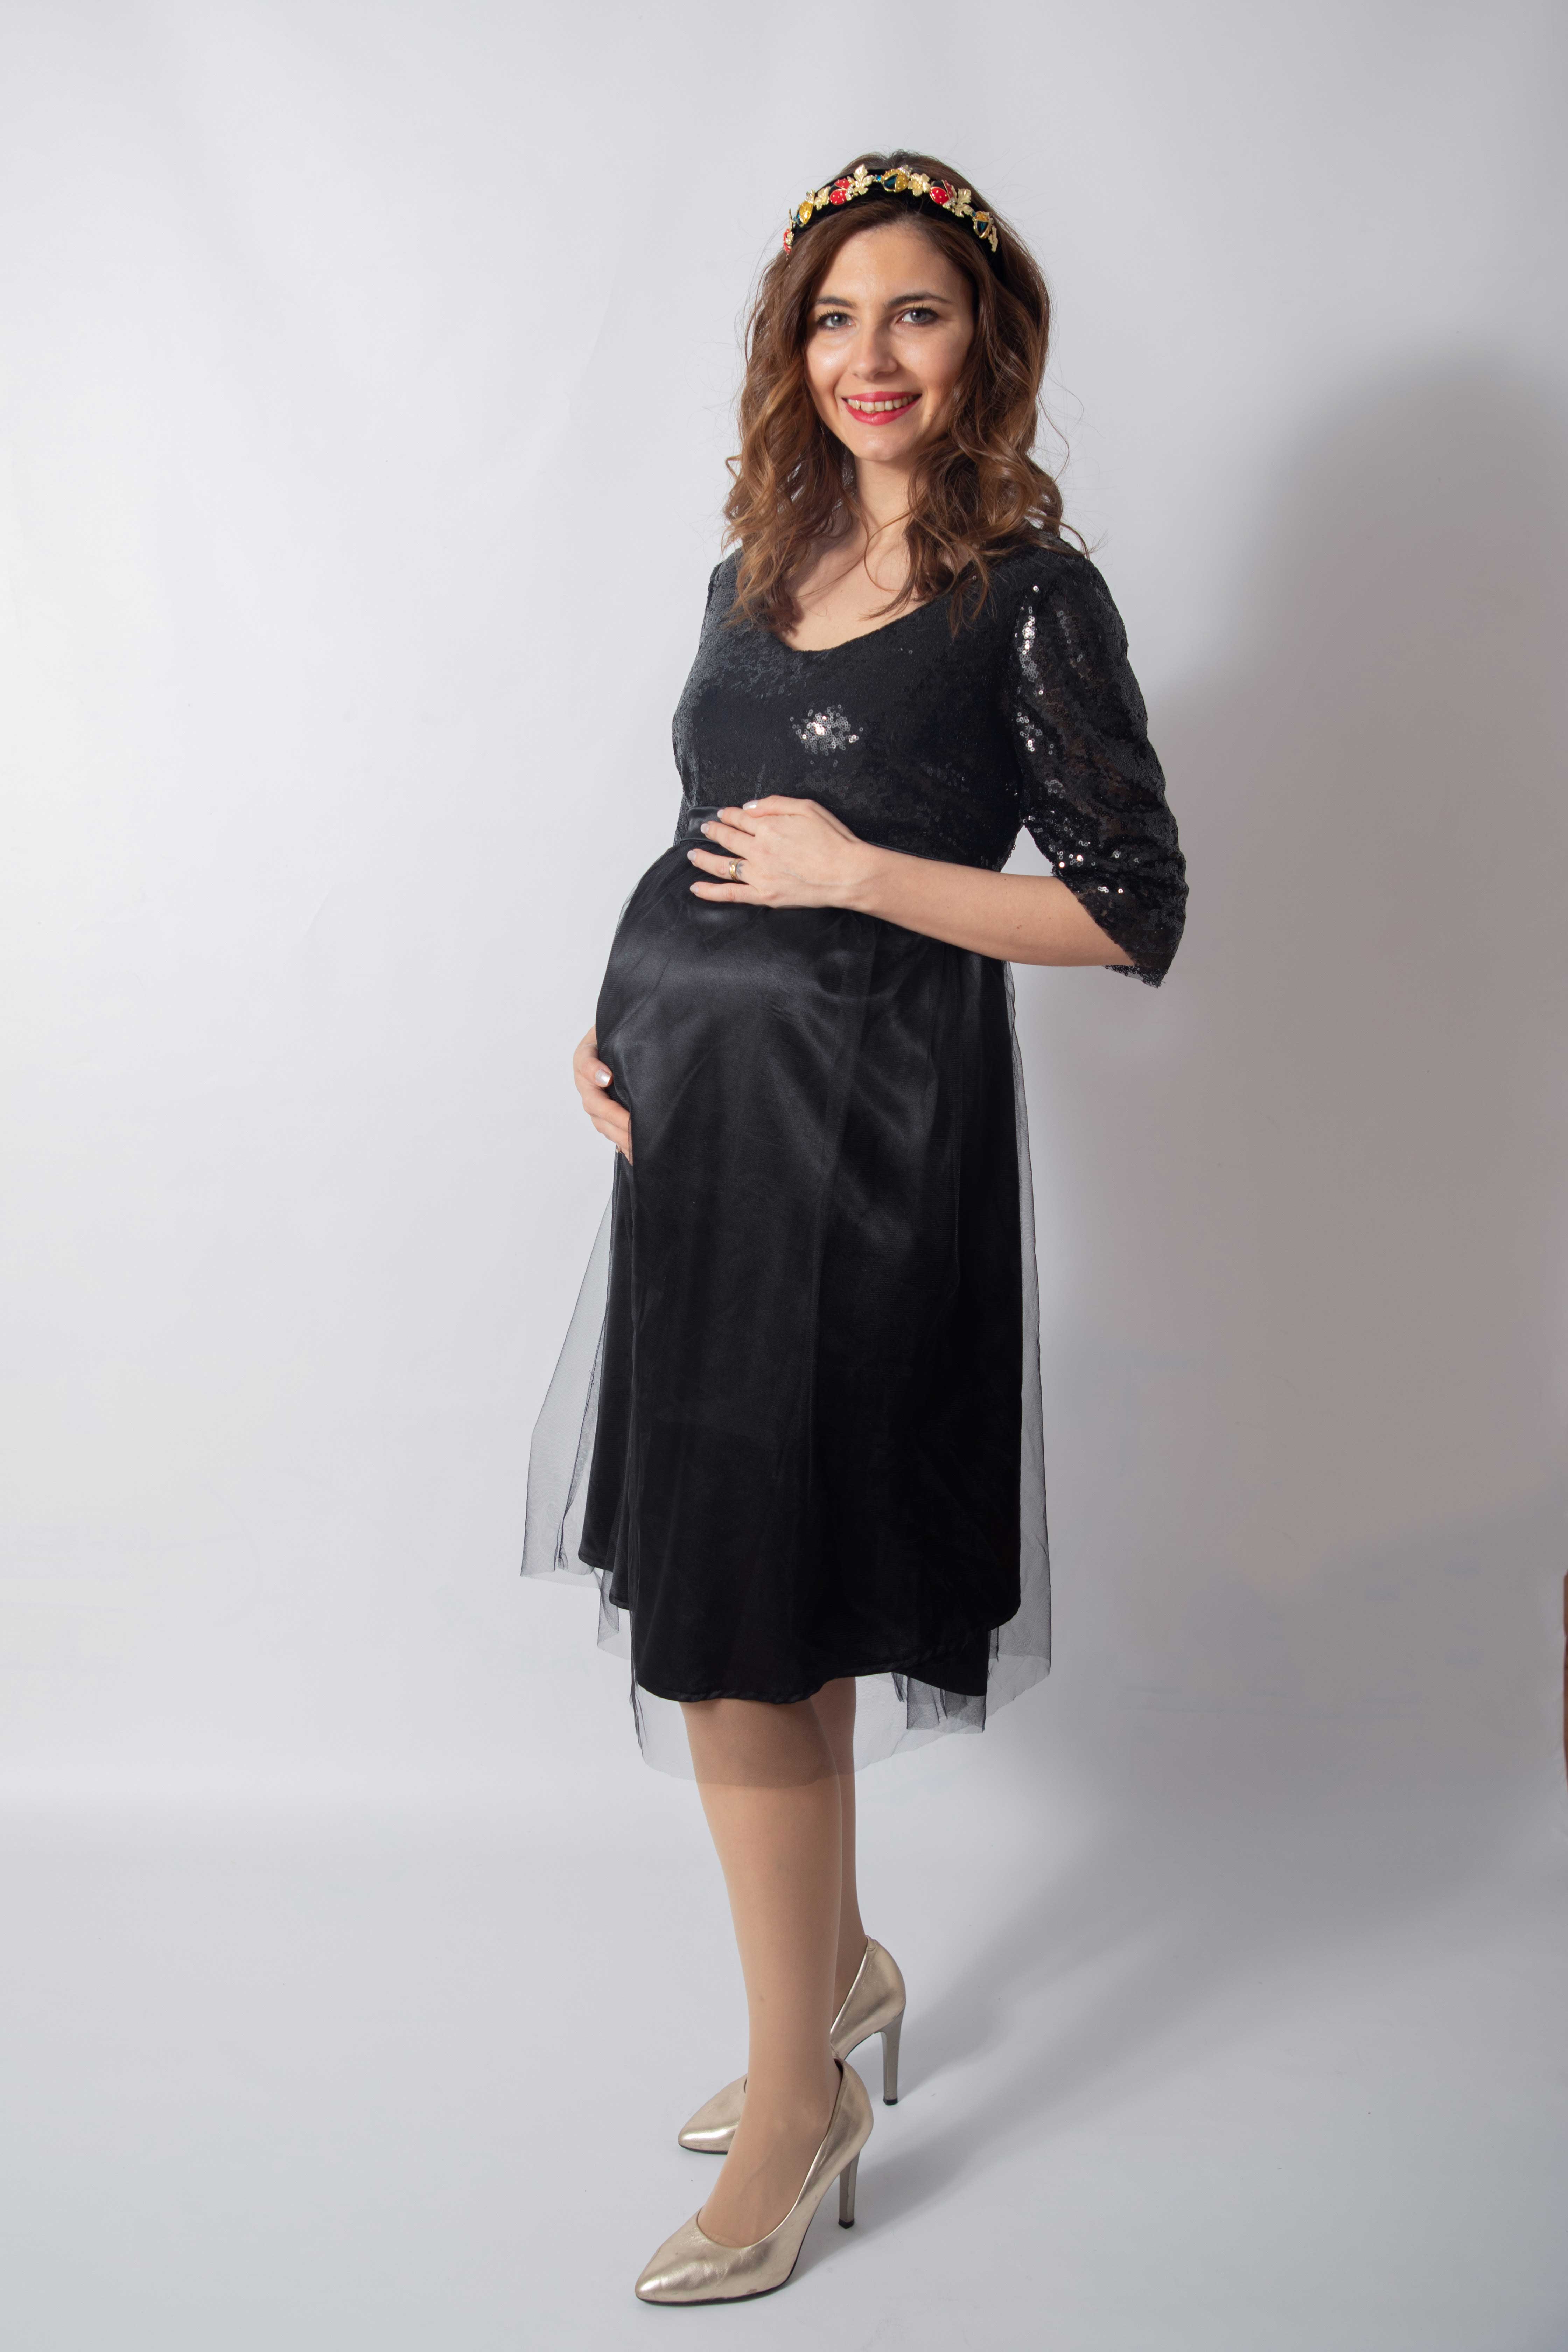 tulle-noire-rochie-eleganta-gravida-cu-paiete-stralucitoare-transport-gratuit [1]